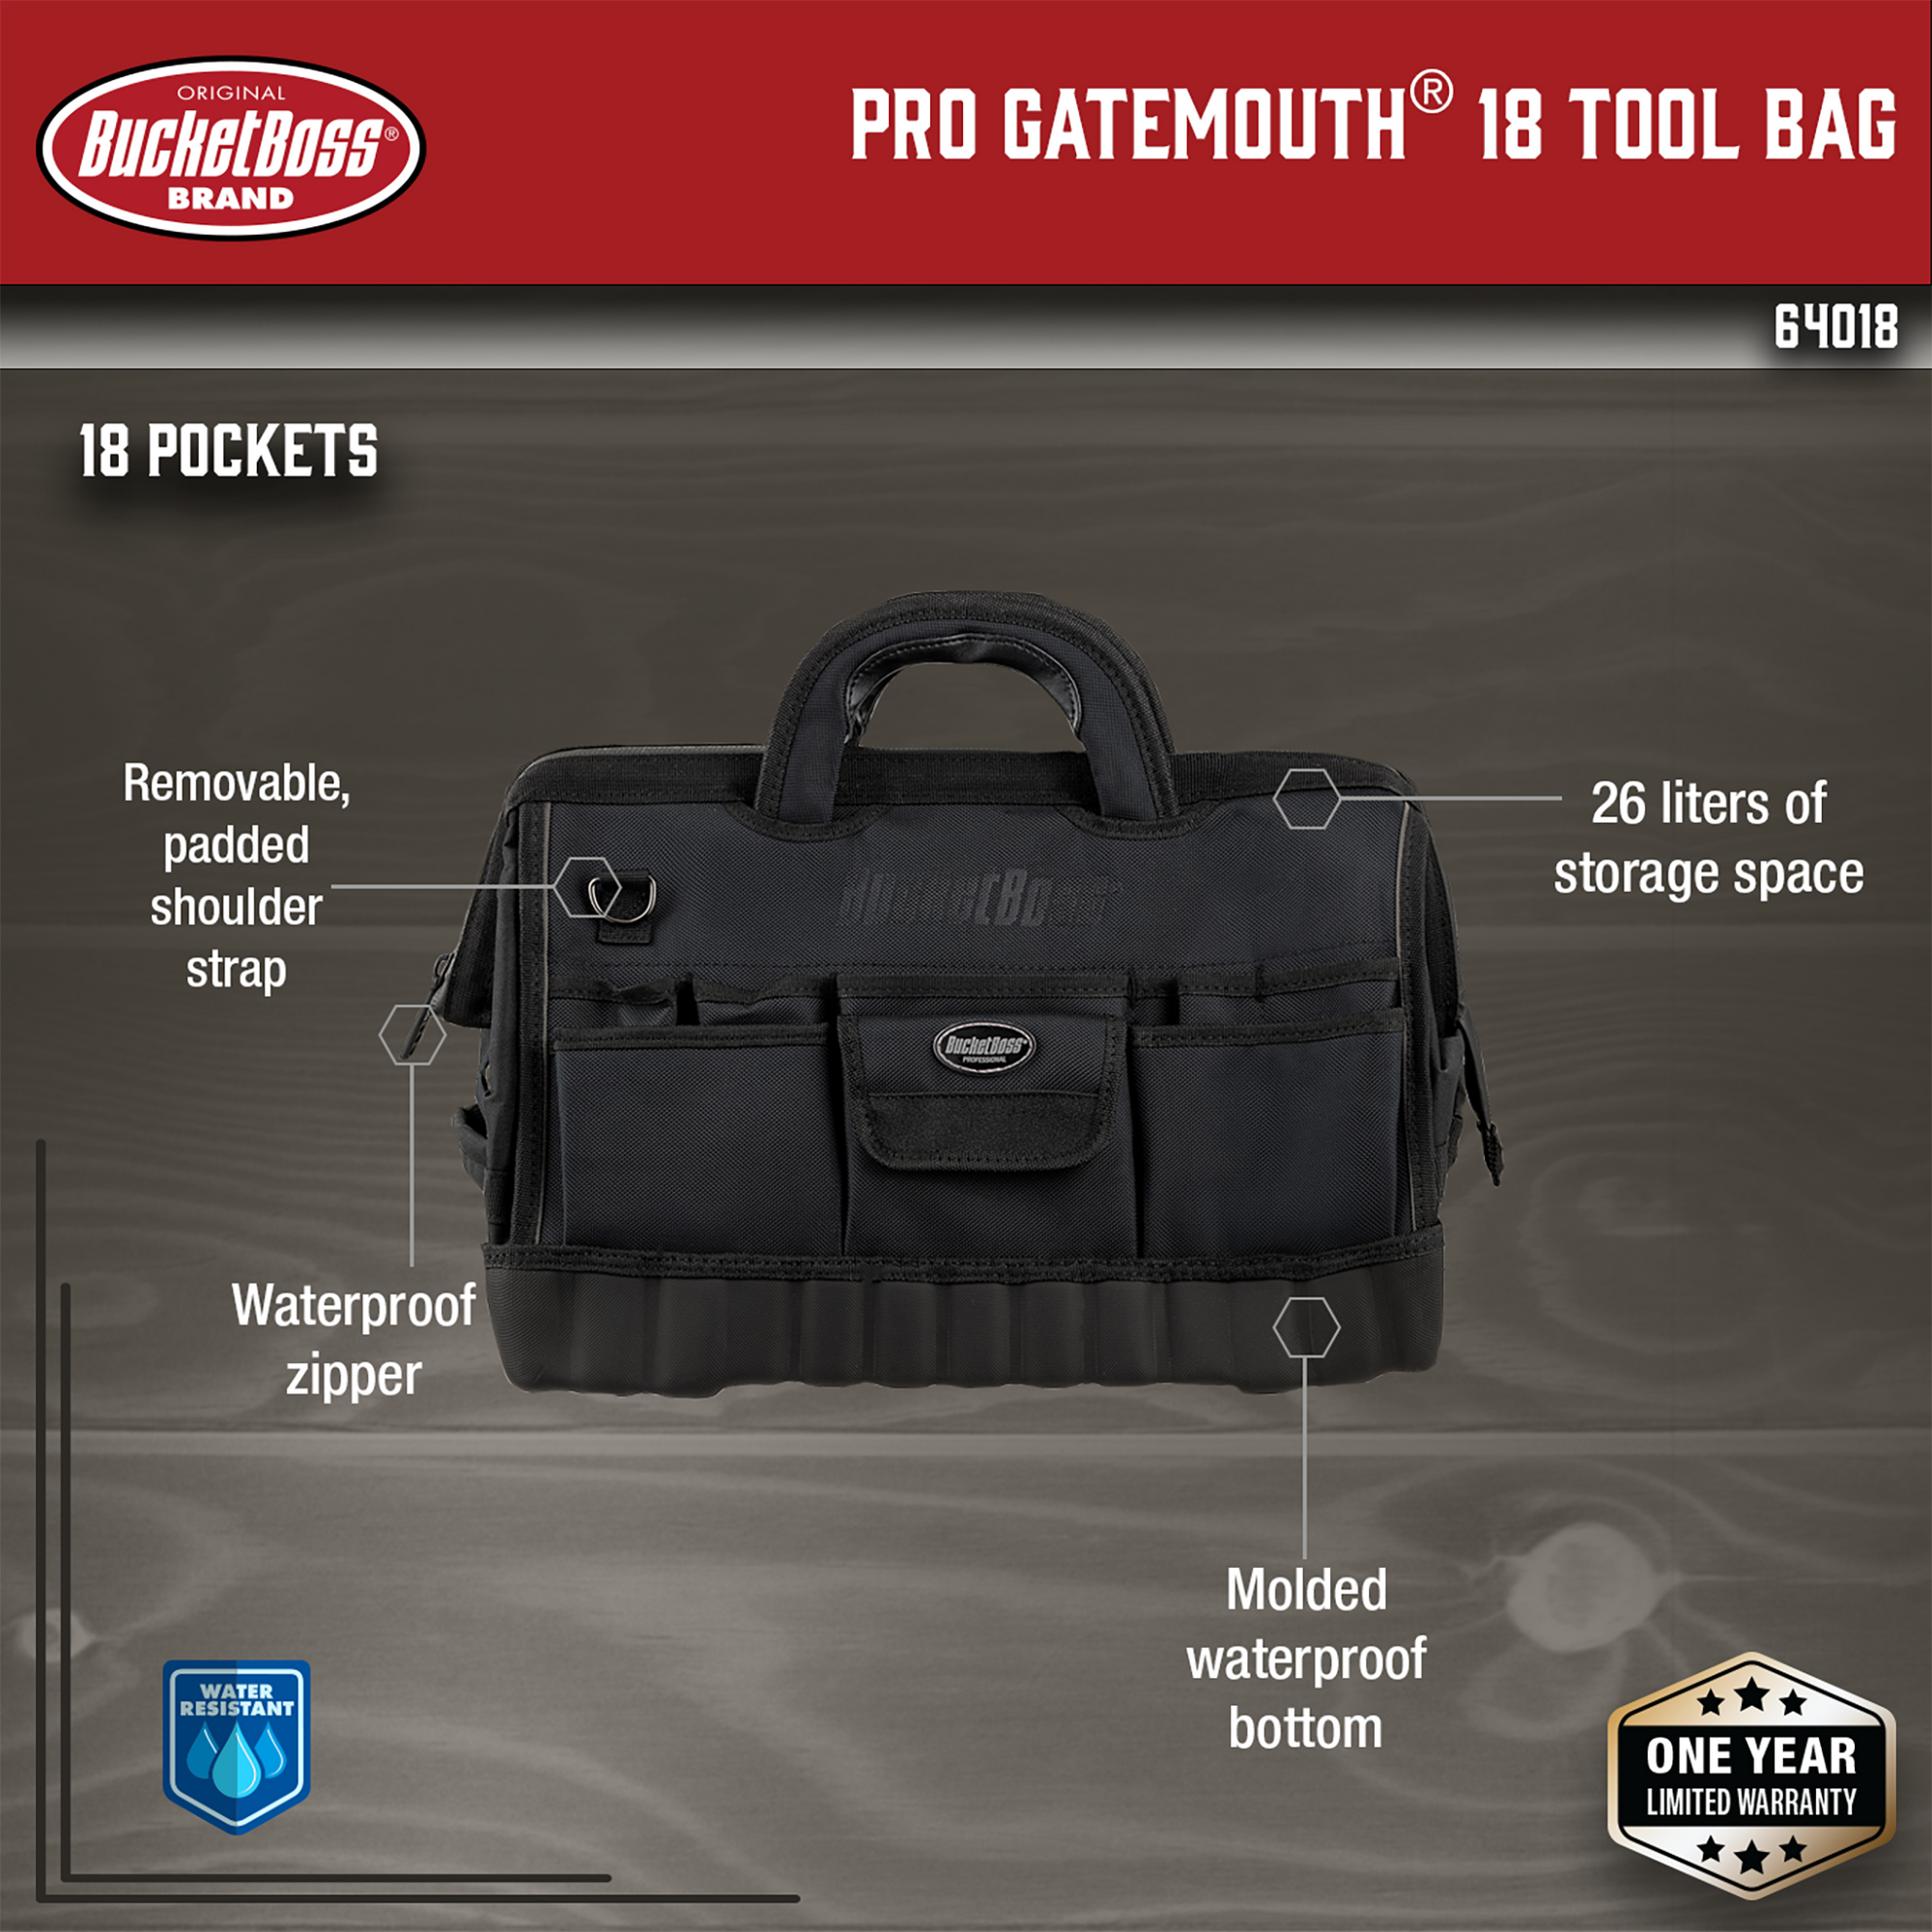 Pro Gatemouth 18 Tool Bag